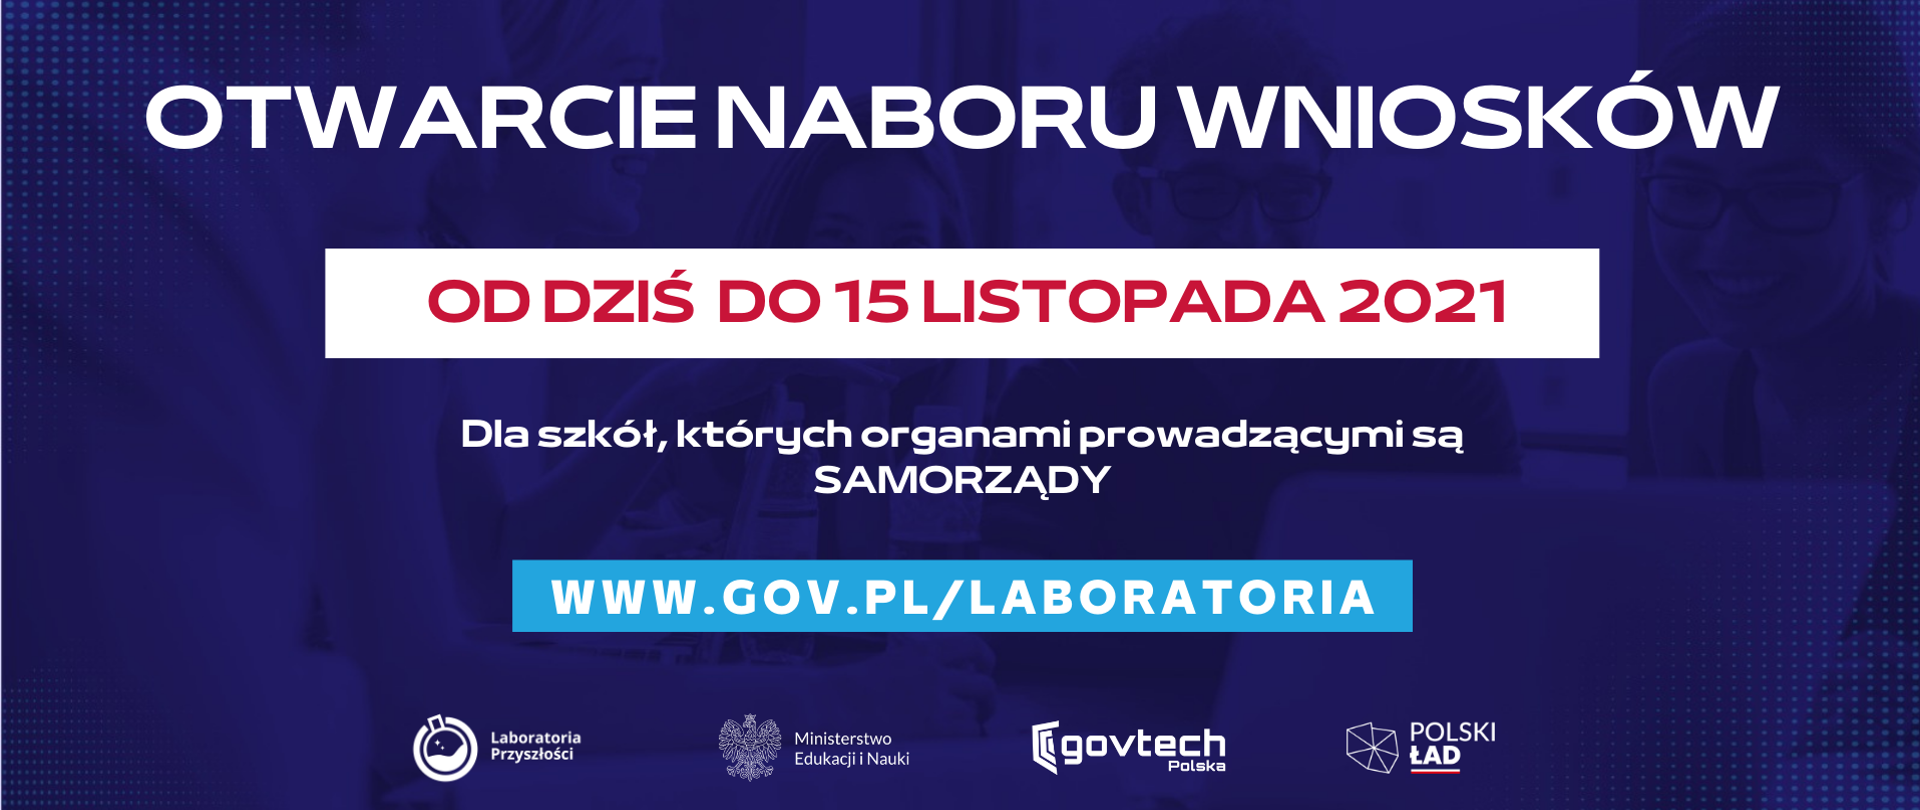 Otwarcie naboru wniosków
Od dziś do 15 listopada 2021
Dla szkół, których organami prowadzącymi są SAMORZĄDY
www.gov.pl/laboratoria